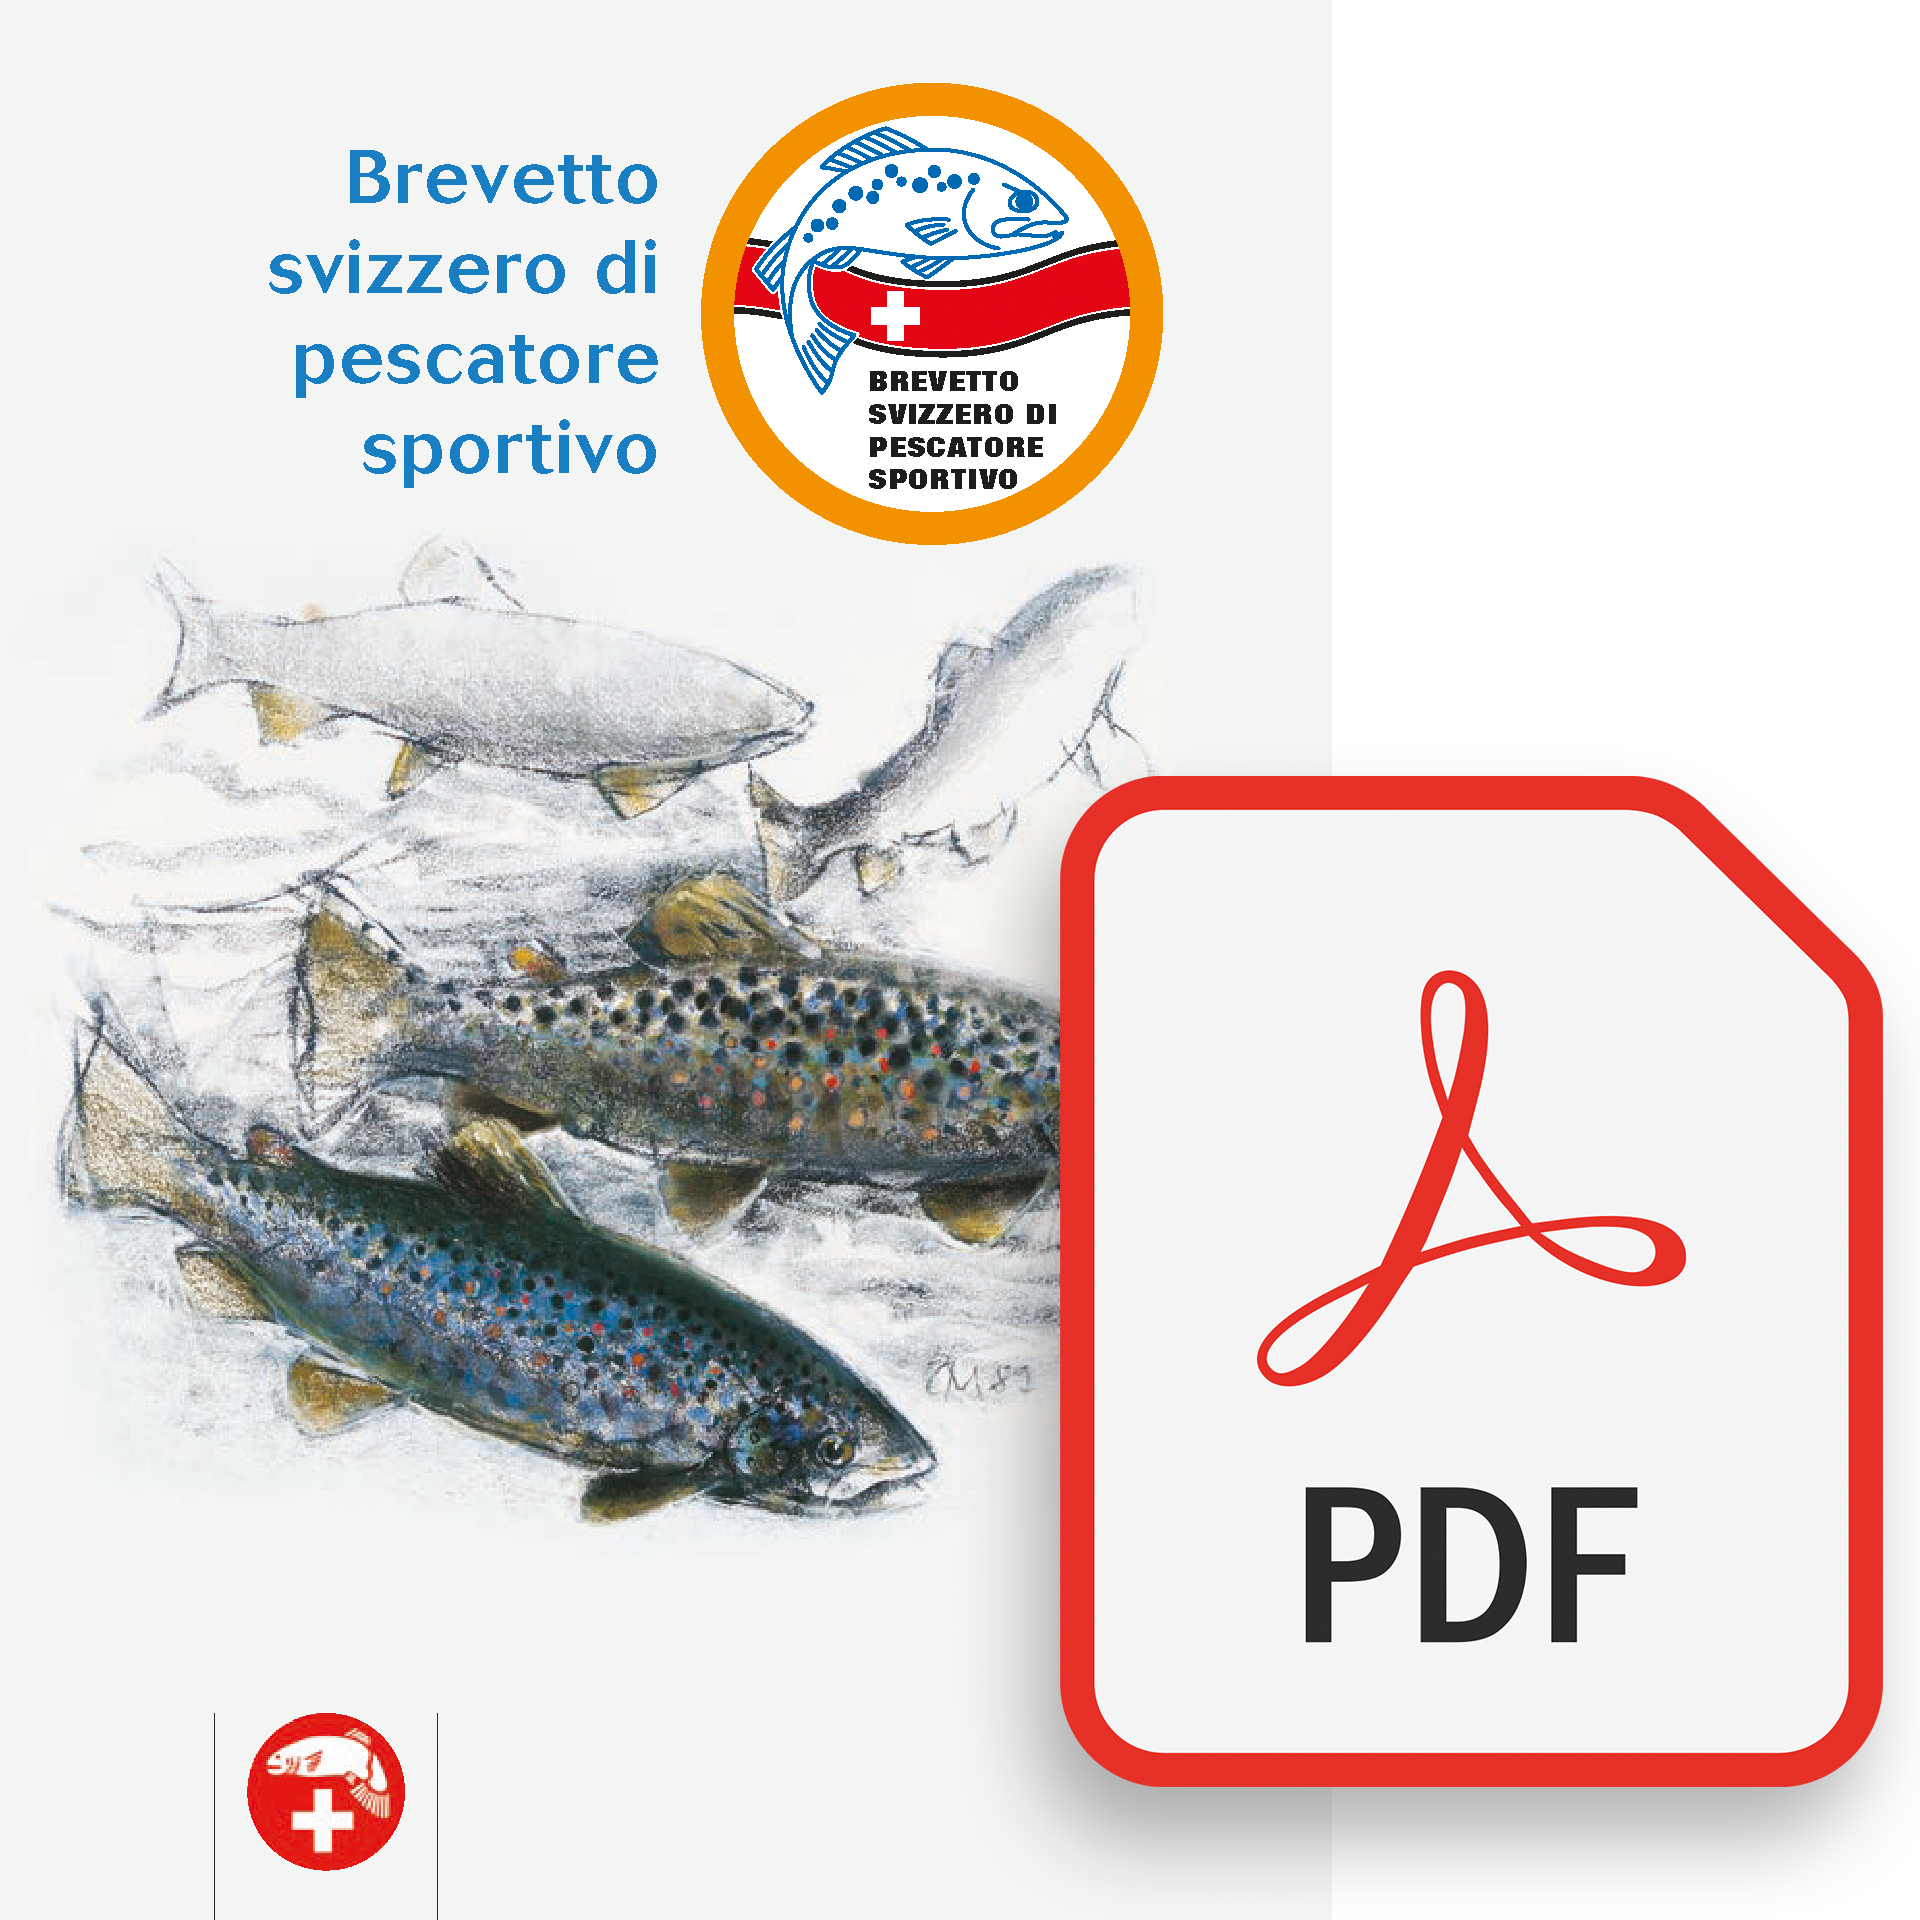 Brevetto svizzero di pescatore sportivo [PDF]